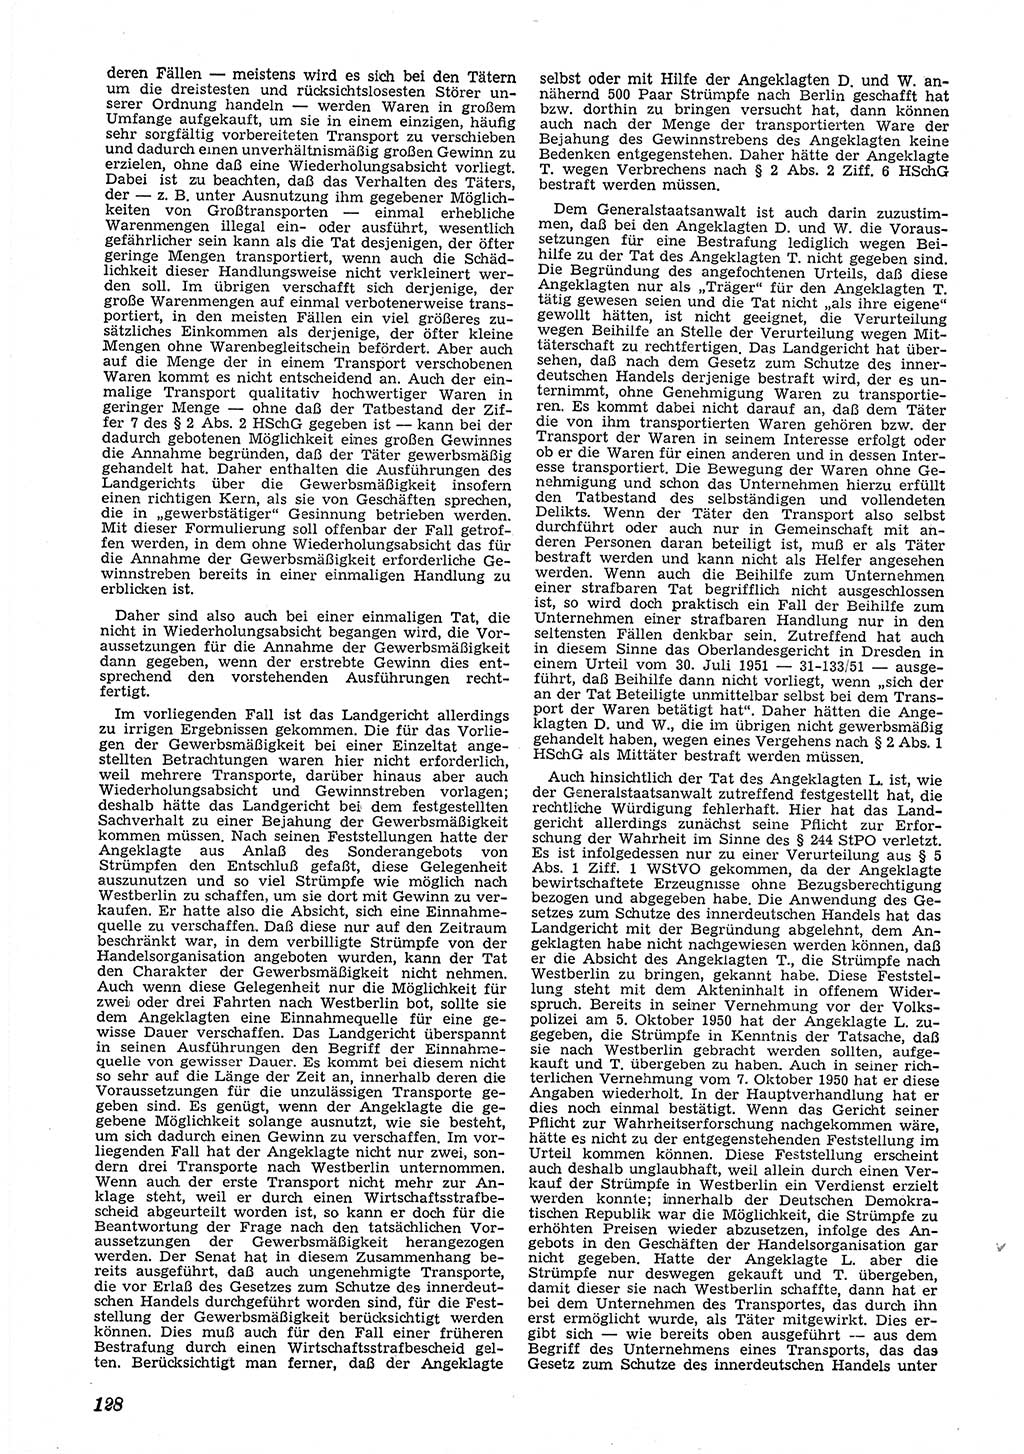 Neue Justiz (NJ), Zeitschrift für Recht und Rechtswissenschaft [Deutsche Demokratische Republik (DDR)], 6. Jahrgang 1952, Seite 128 (NJ DDR 1952, S. 128)